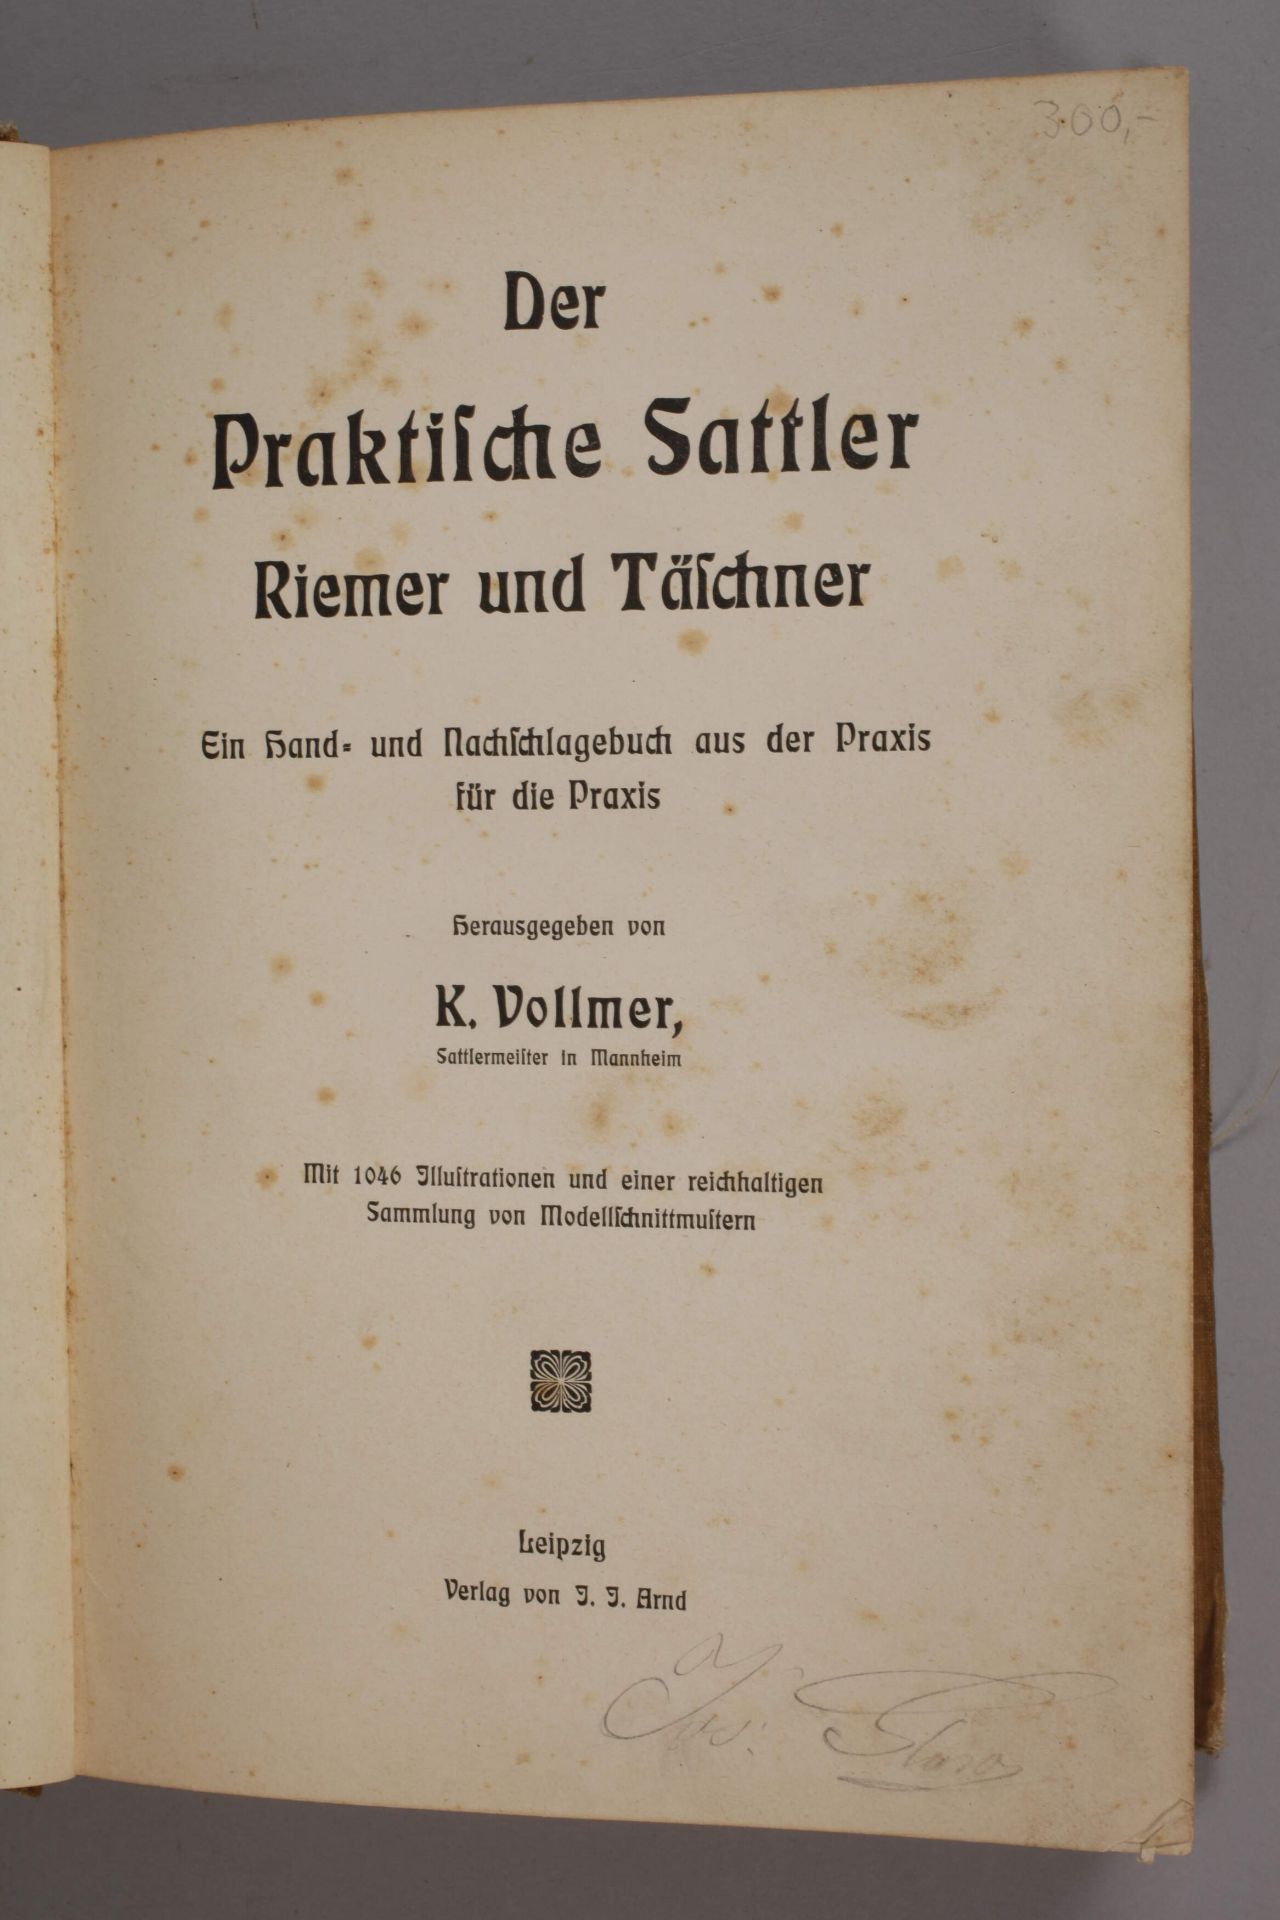 Der praktische Sattler, Riemer und Täschner - Bild 2 aus 4